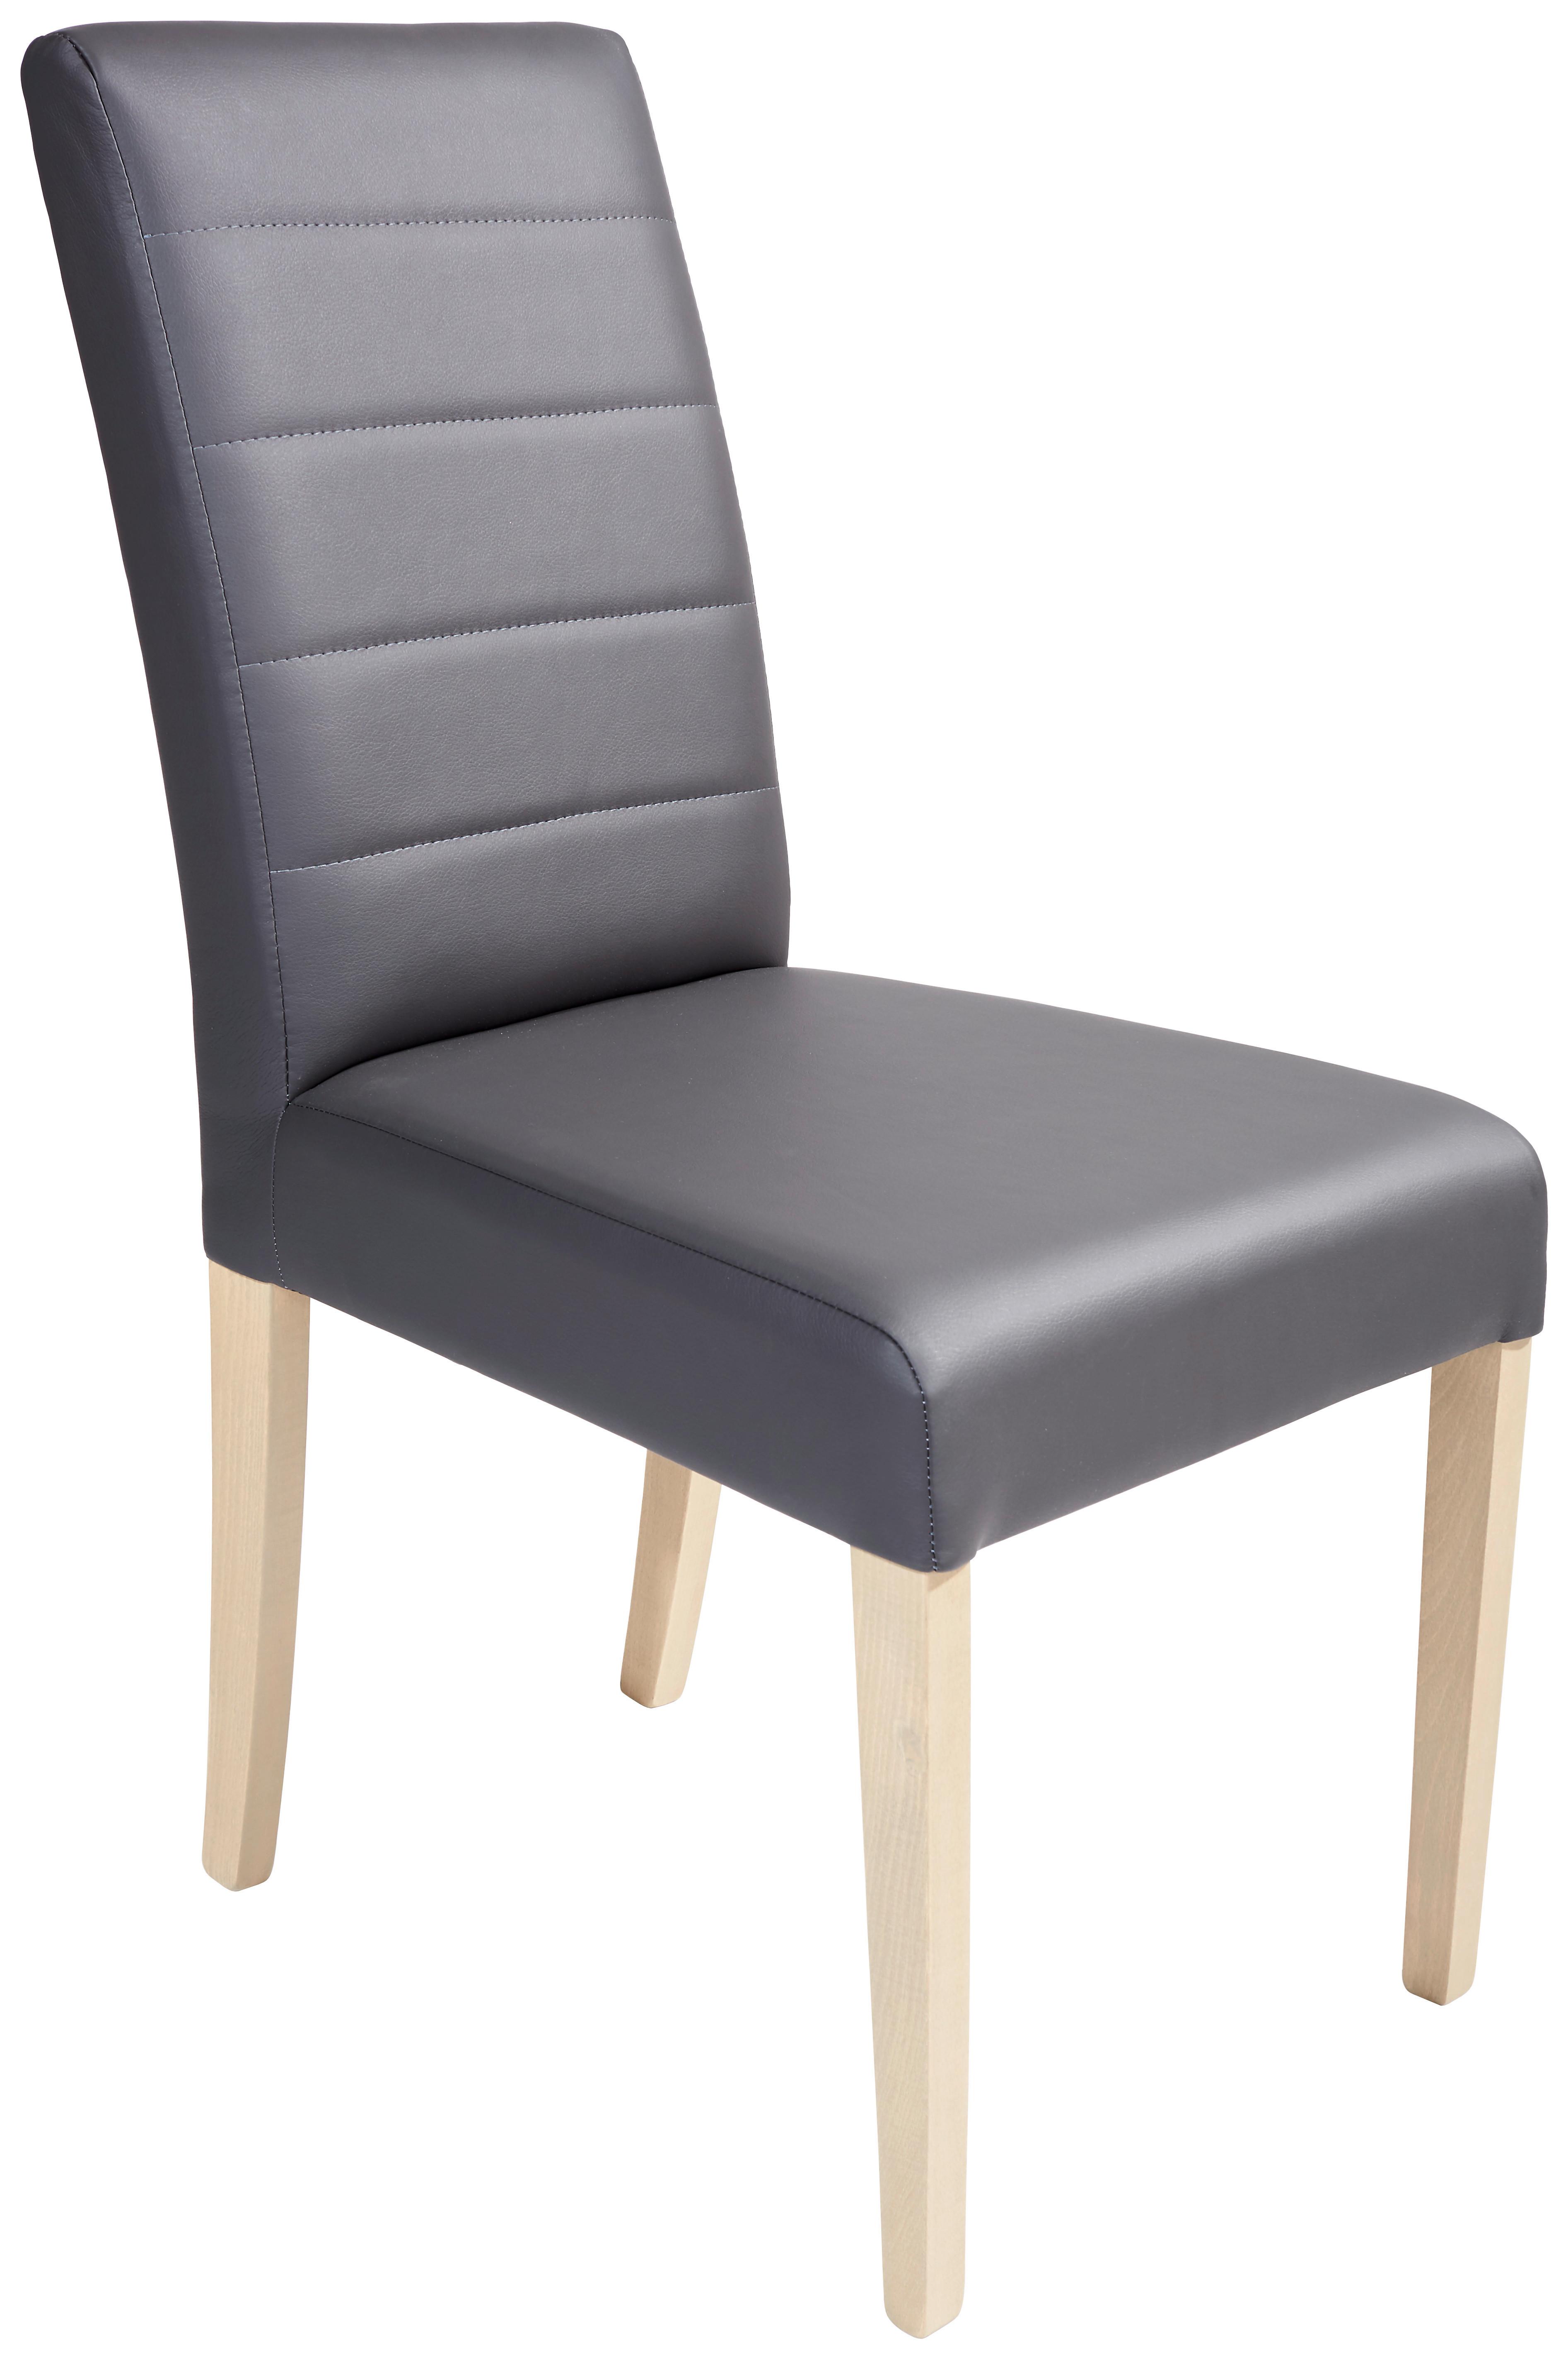 Židle Markus 1+1 Zdarma (1*kus=2 Produkty) - šedá, Konvenční, dřevo/plast (43,5/91/56,5cm)